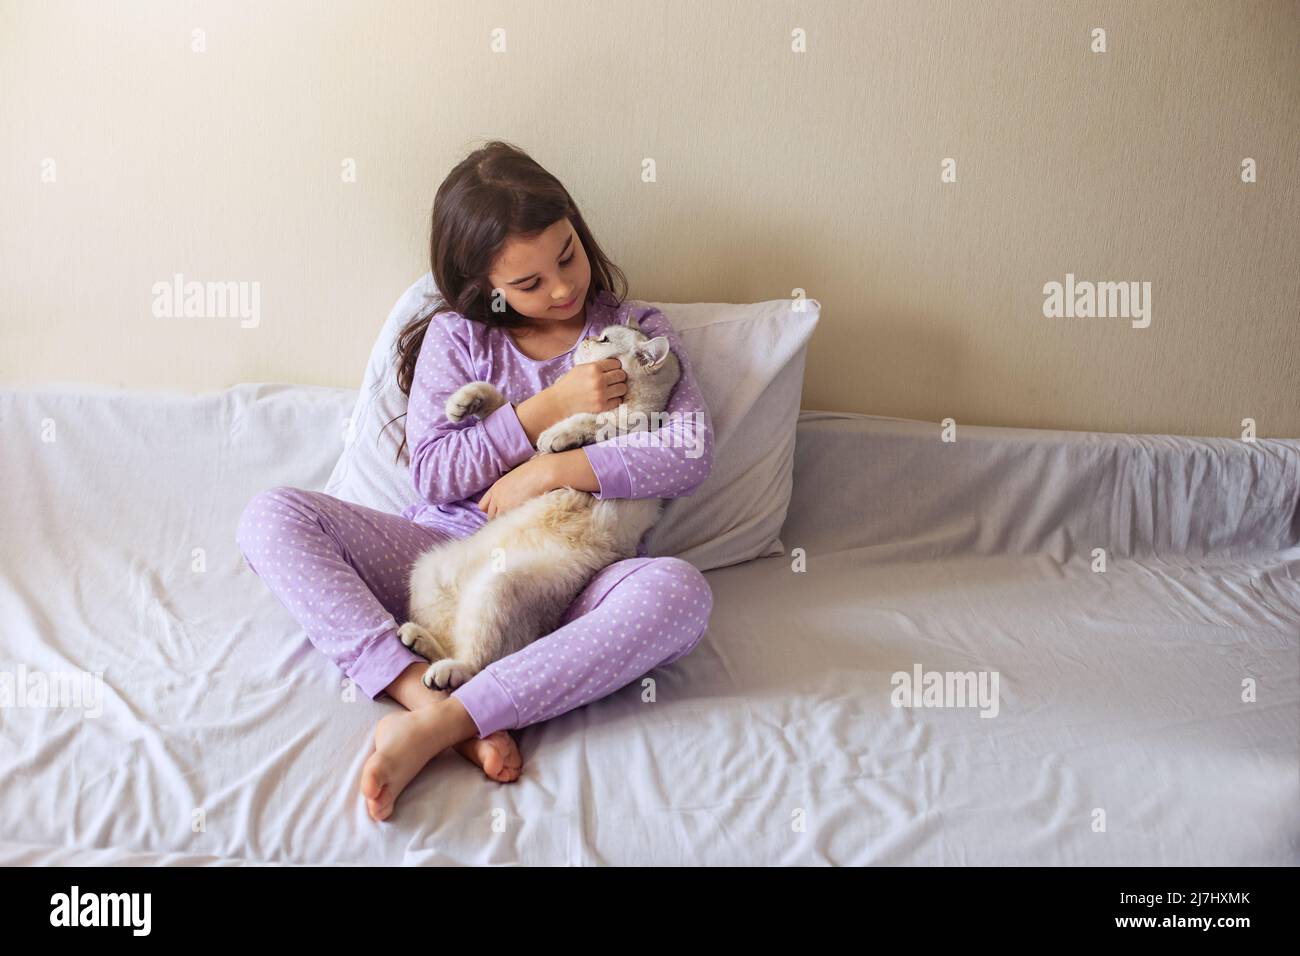 Una bambina in pigiama viola, con i suoi capelli scuri sciolti, si siede abbracciando un gatto bianco affascinante Foto Stock